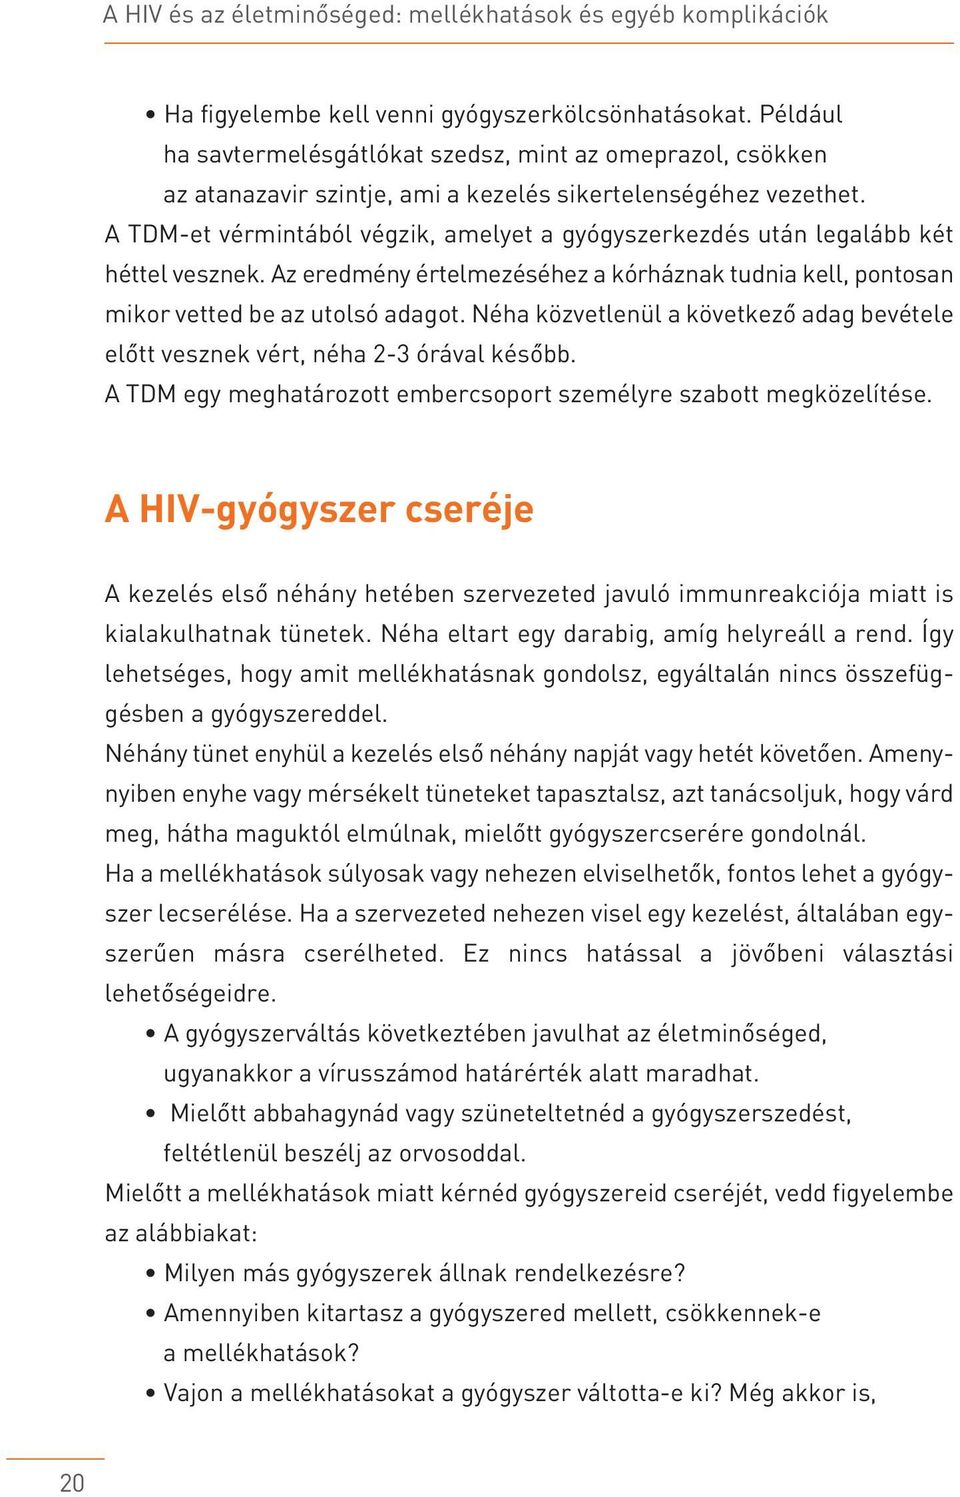 zsírvesztés hiv)